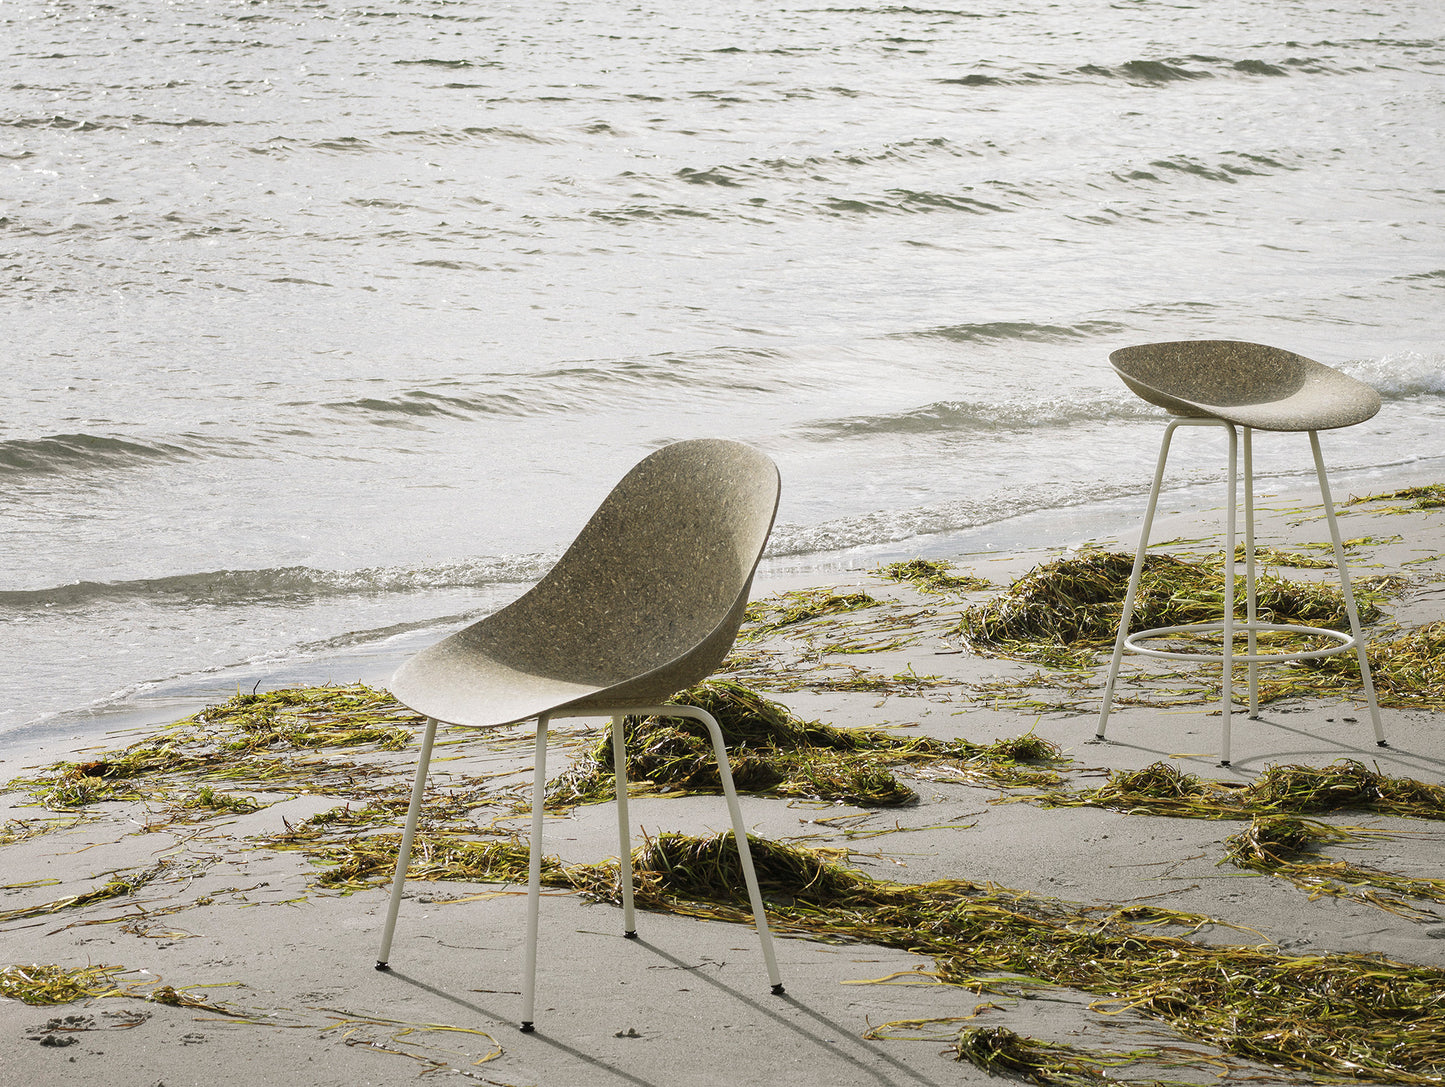 Mat Chair - Steel by Normann Copenhagen / Cream Steel Base / Seaweed